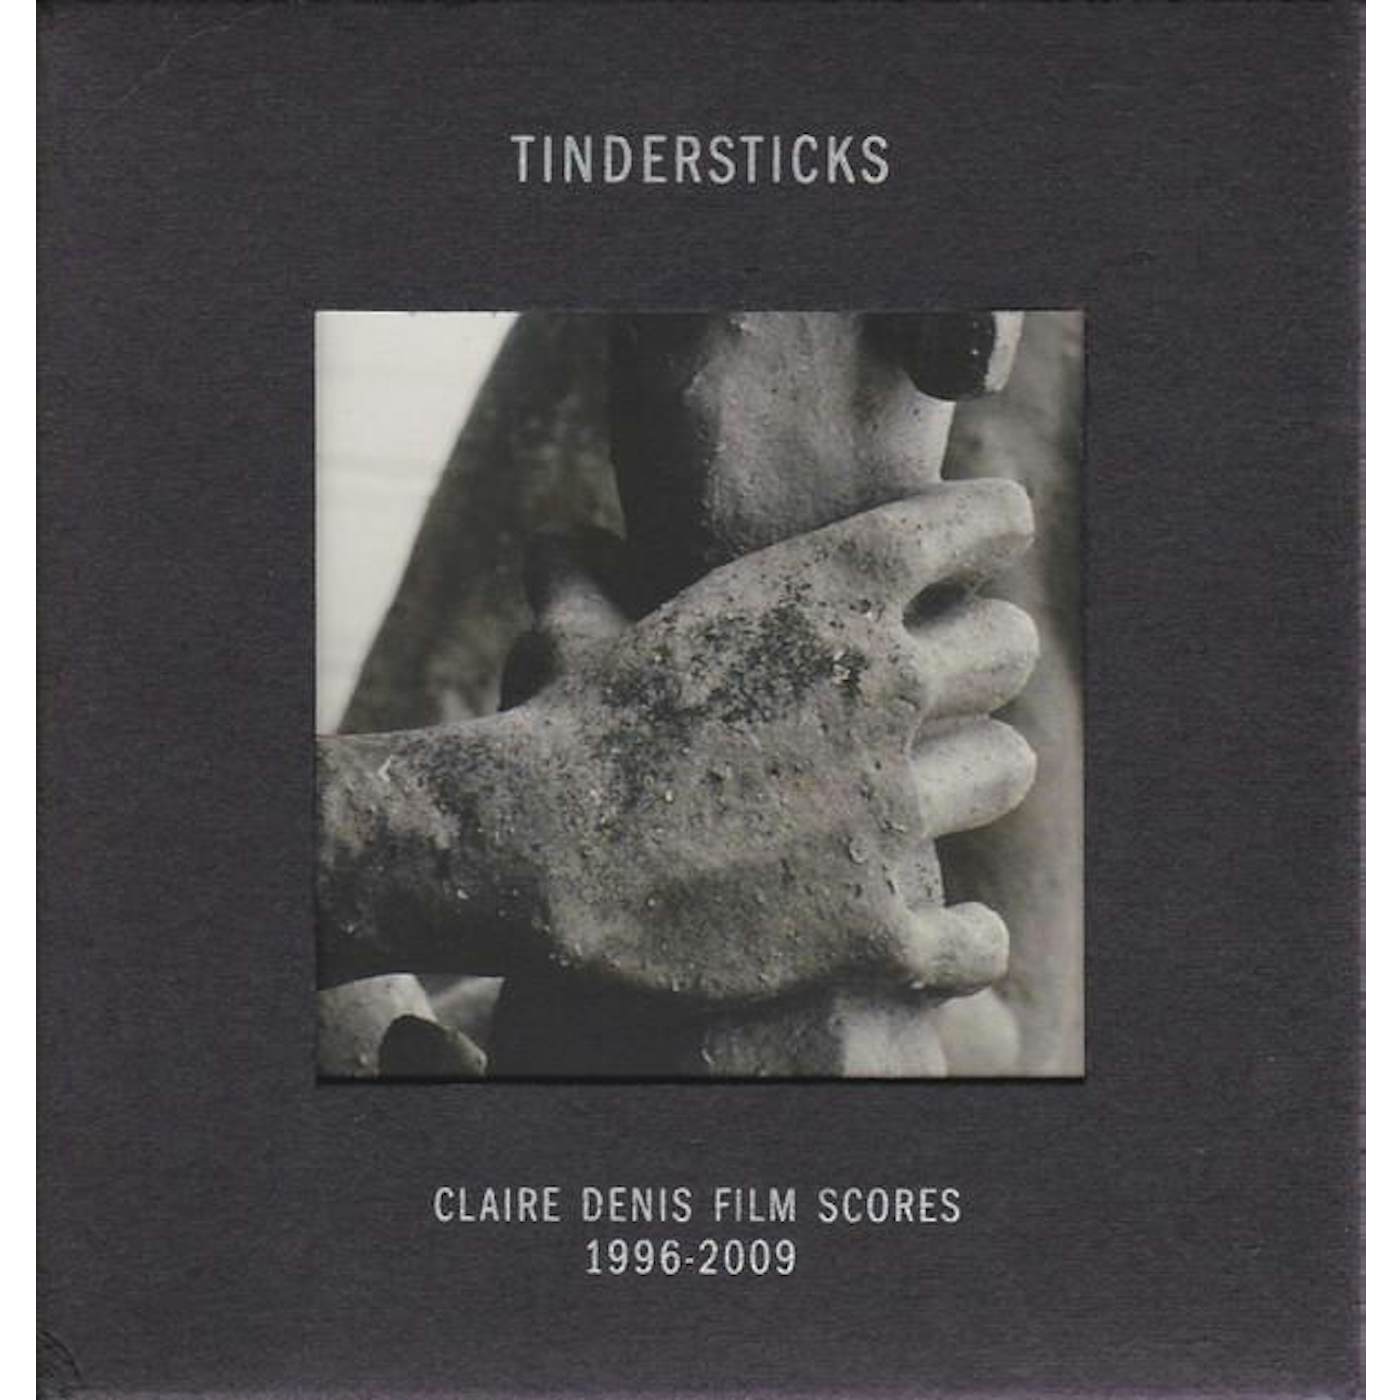 Tindersticks CLAIRE DENIS FILM SCORES 1996-2009 CD